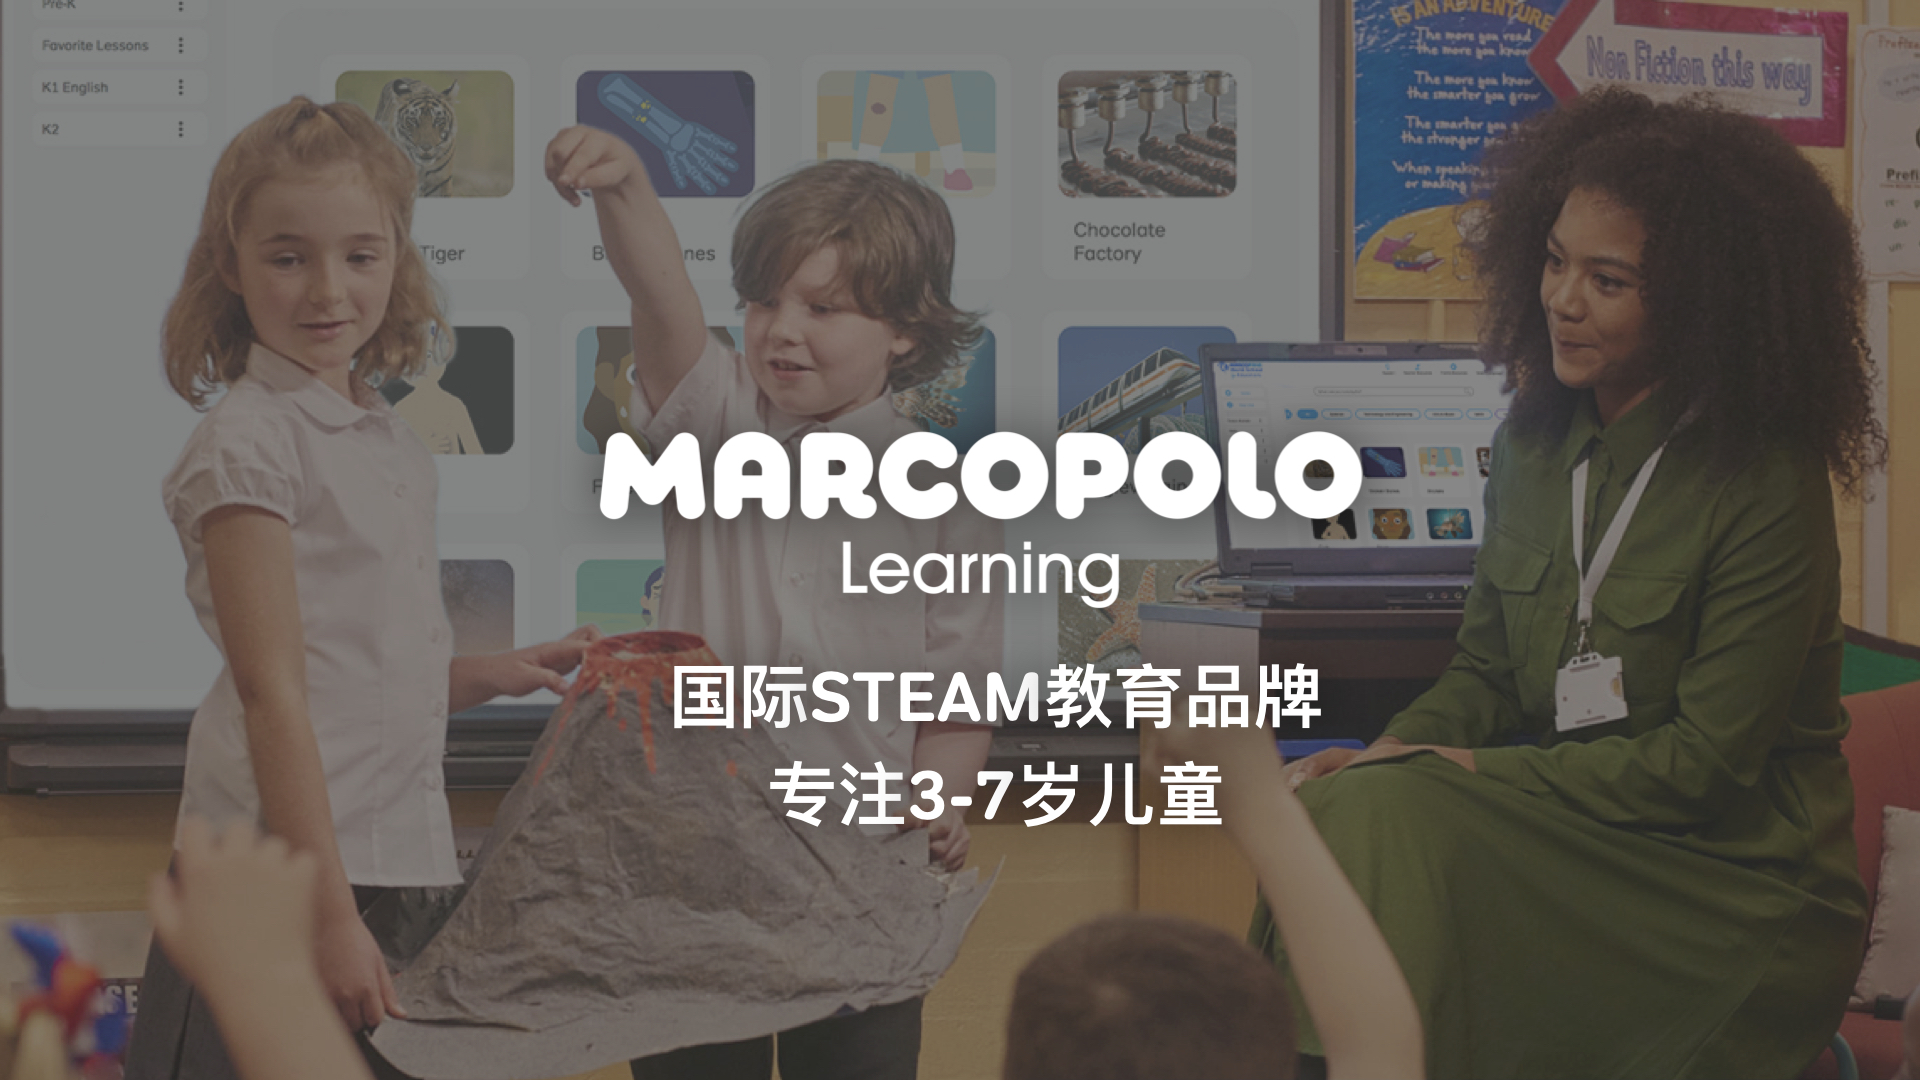 MarcoPolo Learning完成1500万美元A+轮中首轮融资 新东方领投